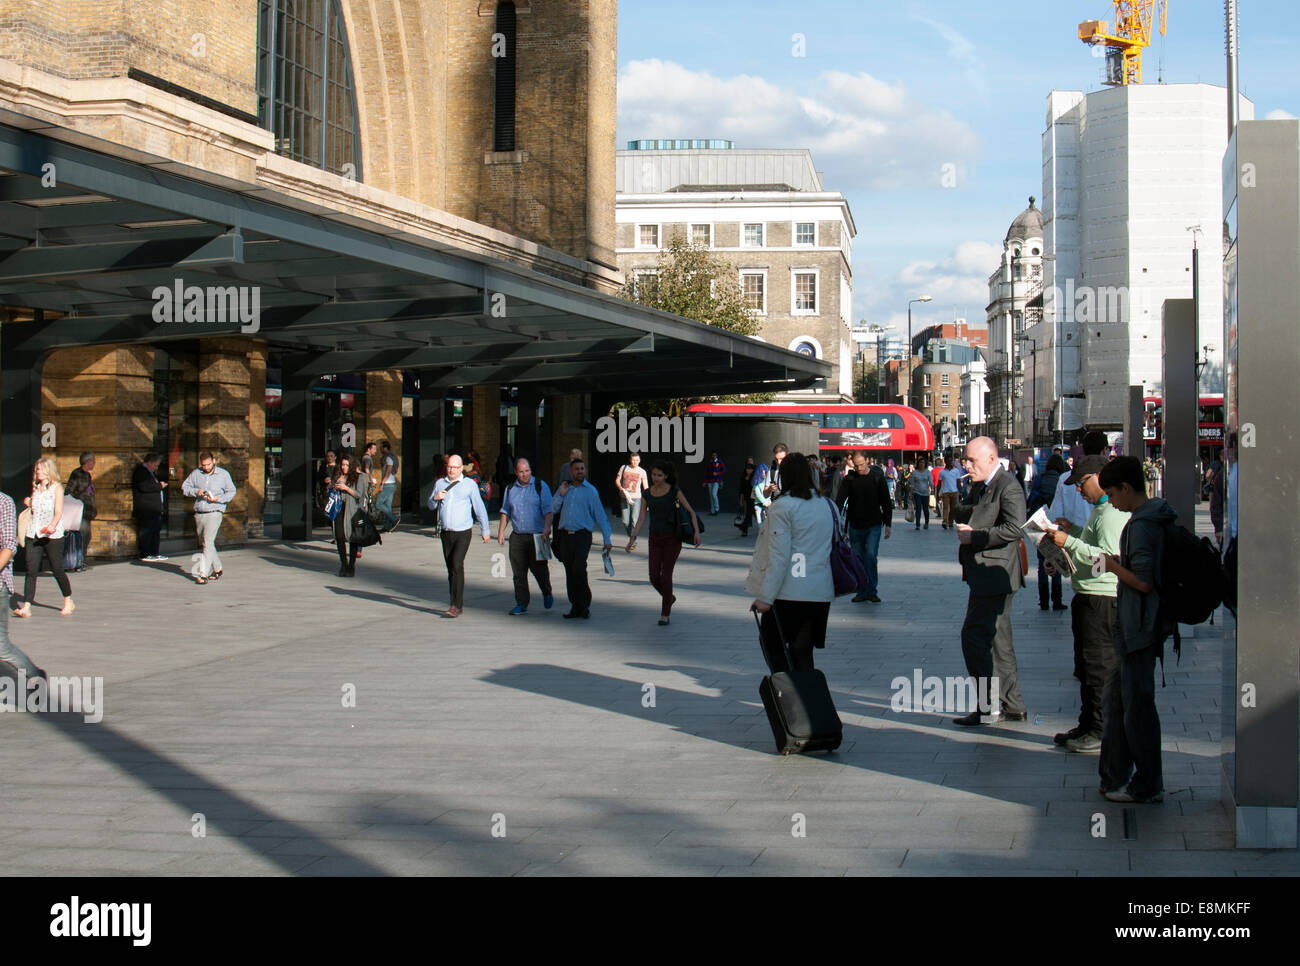 Patio de la estación de tren de Kings Cross, London, UK Foto de stock